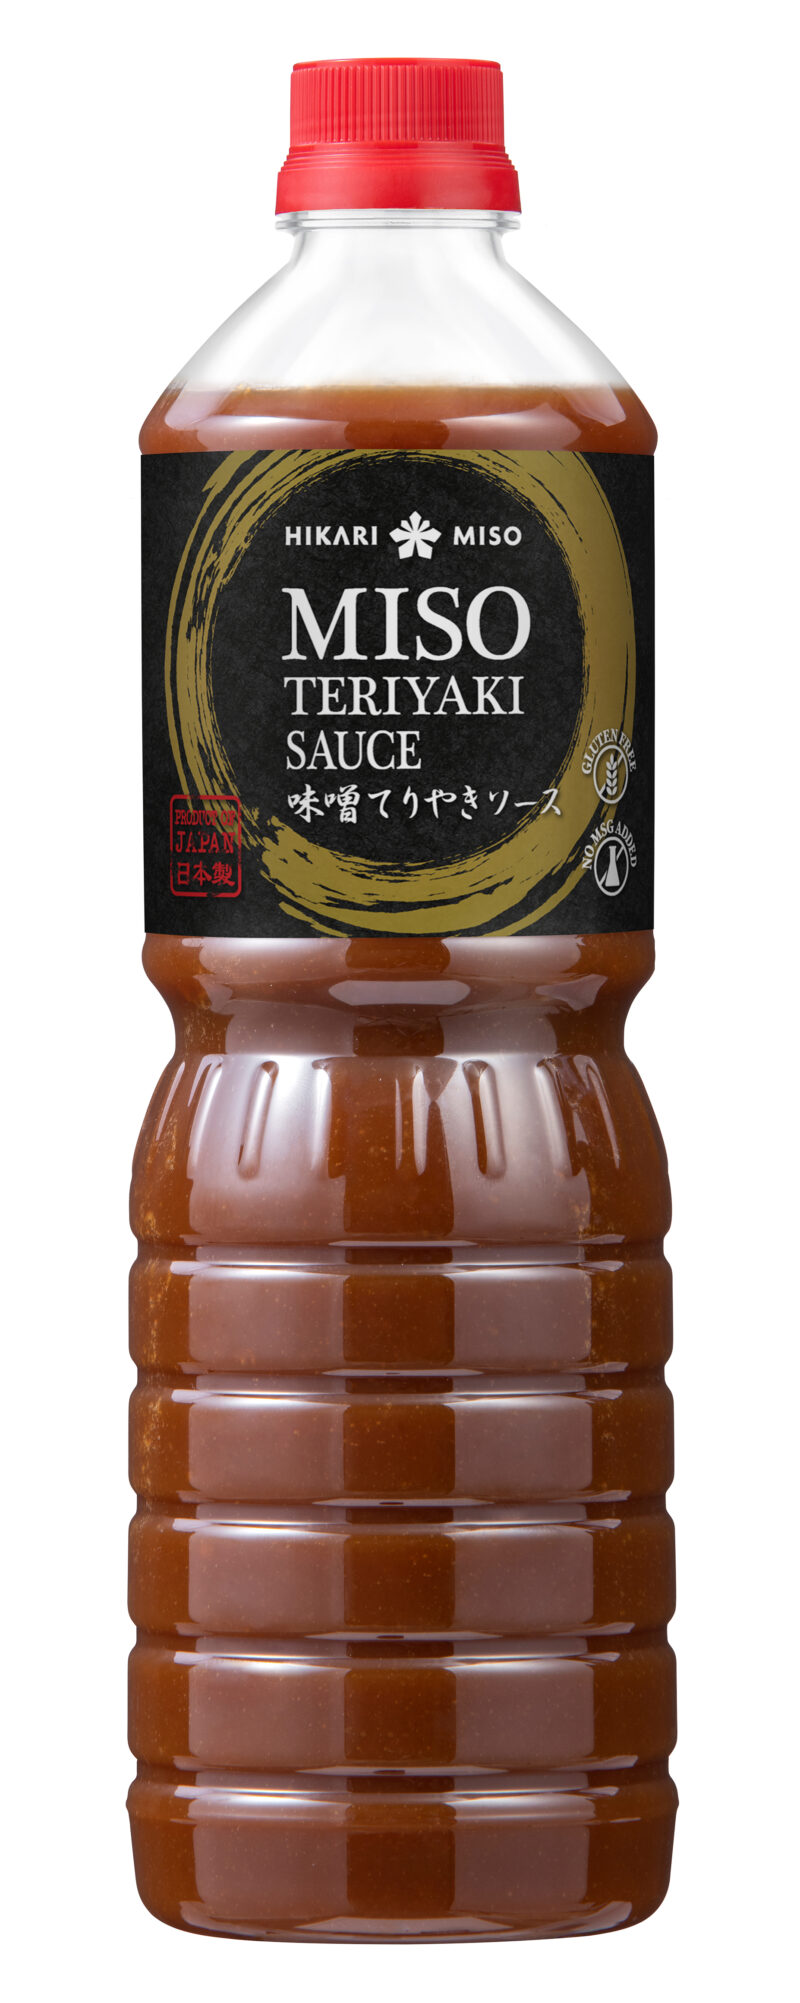 Miso Teriyaki Sauce45.8 oz(1.3kg)